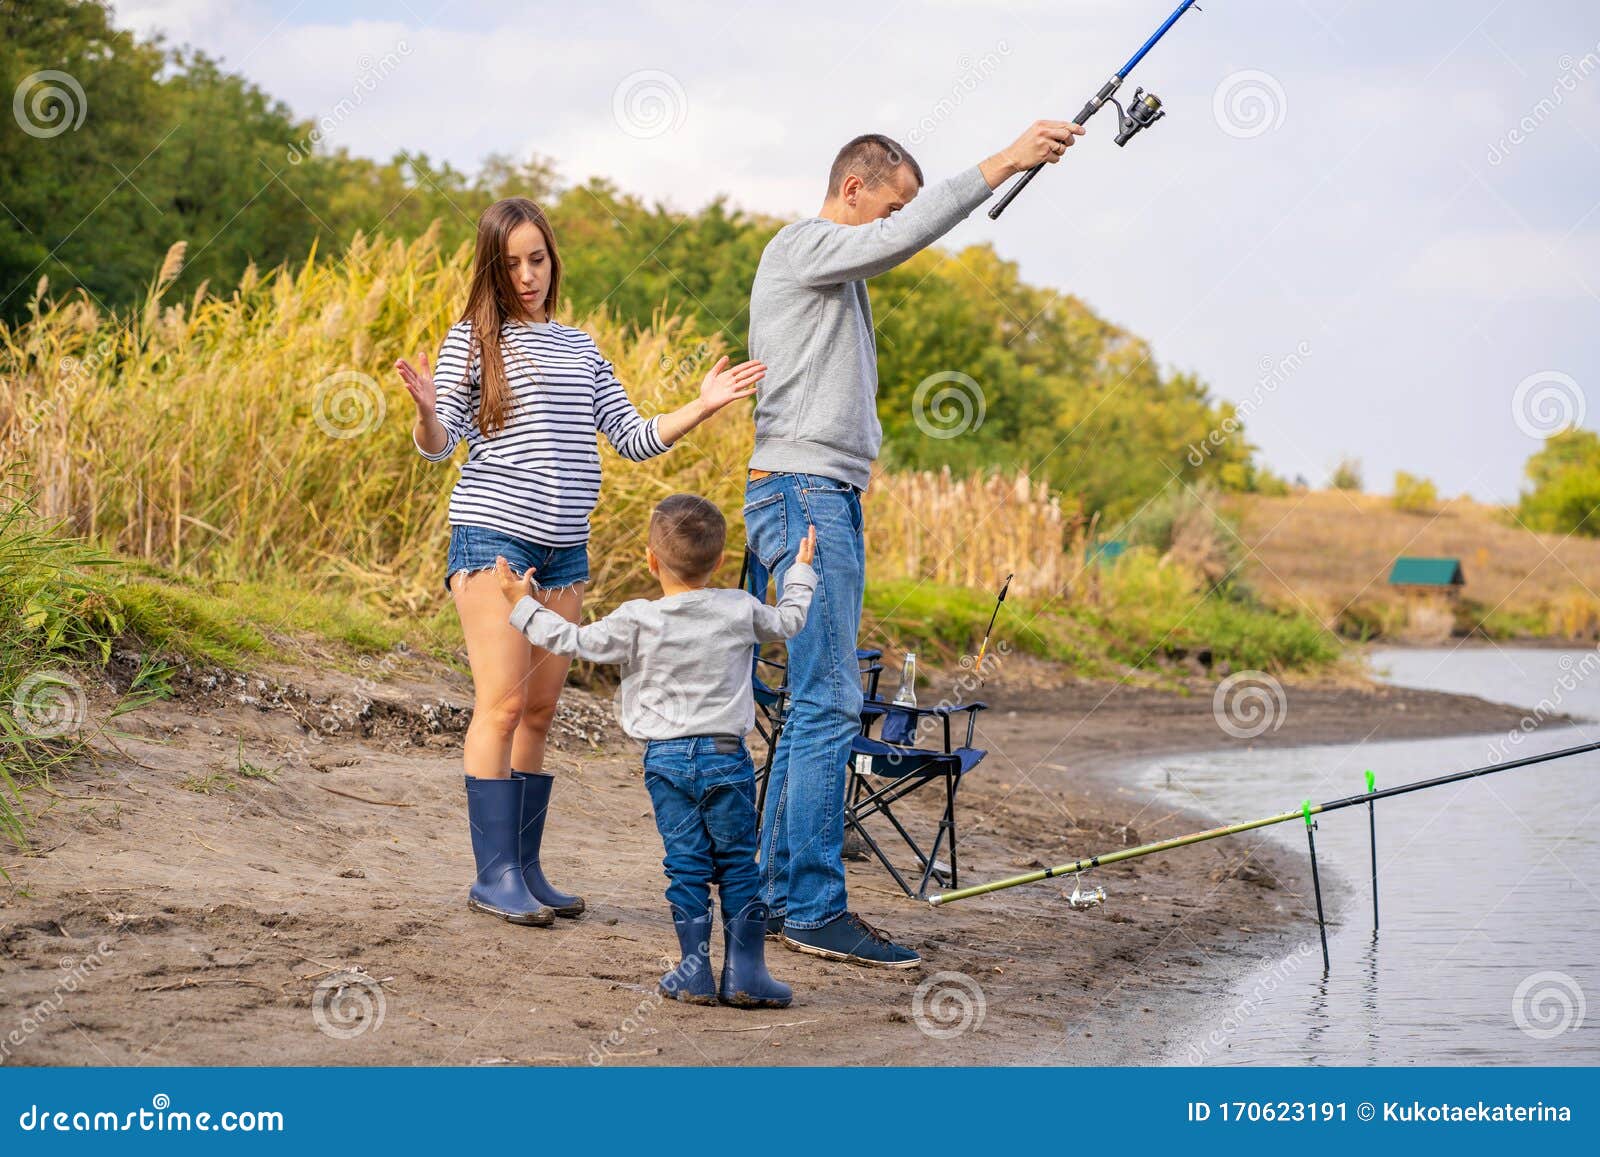 父子在湖边一起钓鱼 库存图片. 图片 包括有 池塘, 父亲, 本质, 捕鱼, 孩子, 背包, 系列, 其它 - 157912759